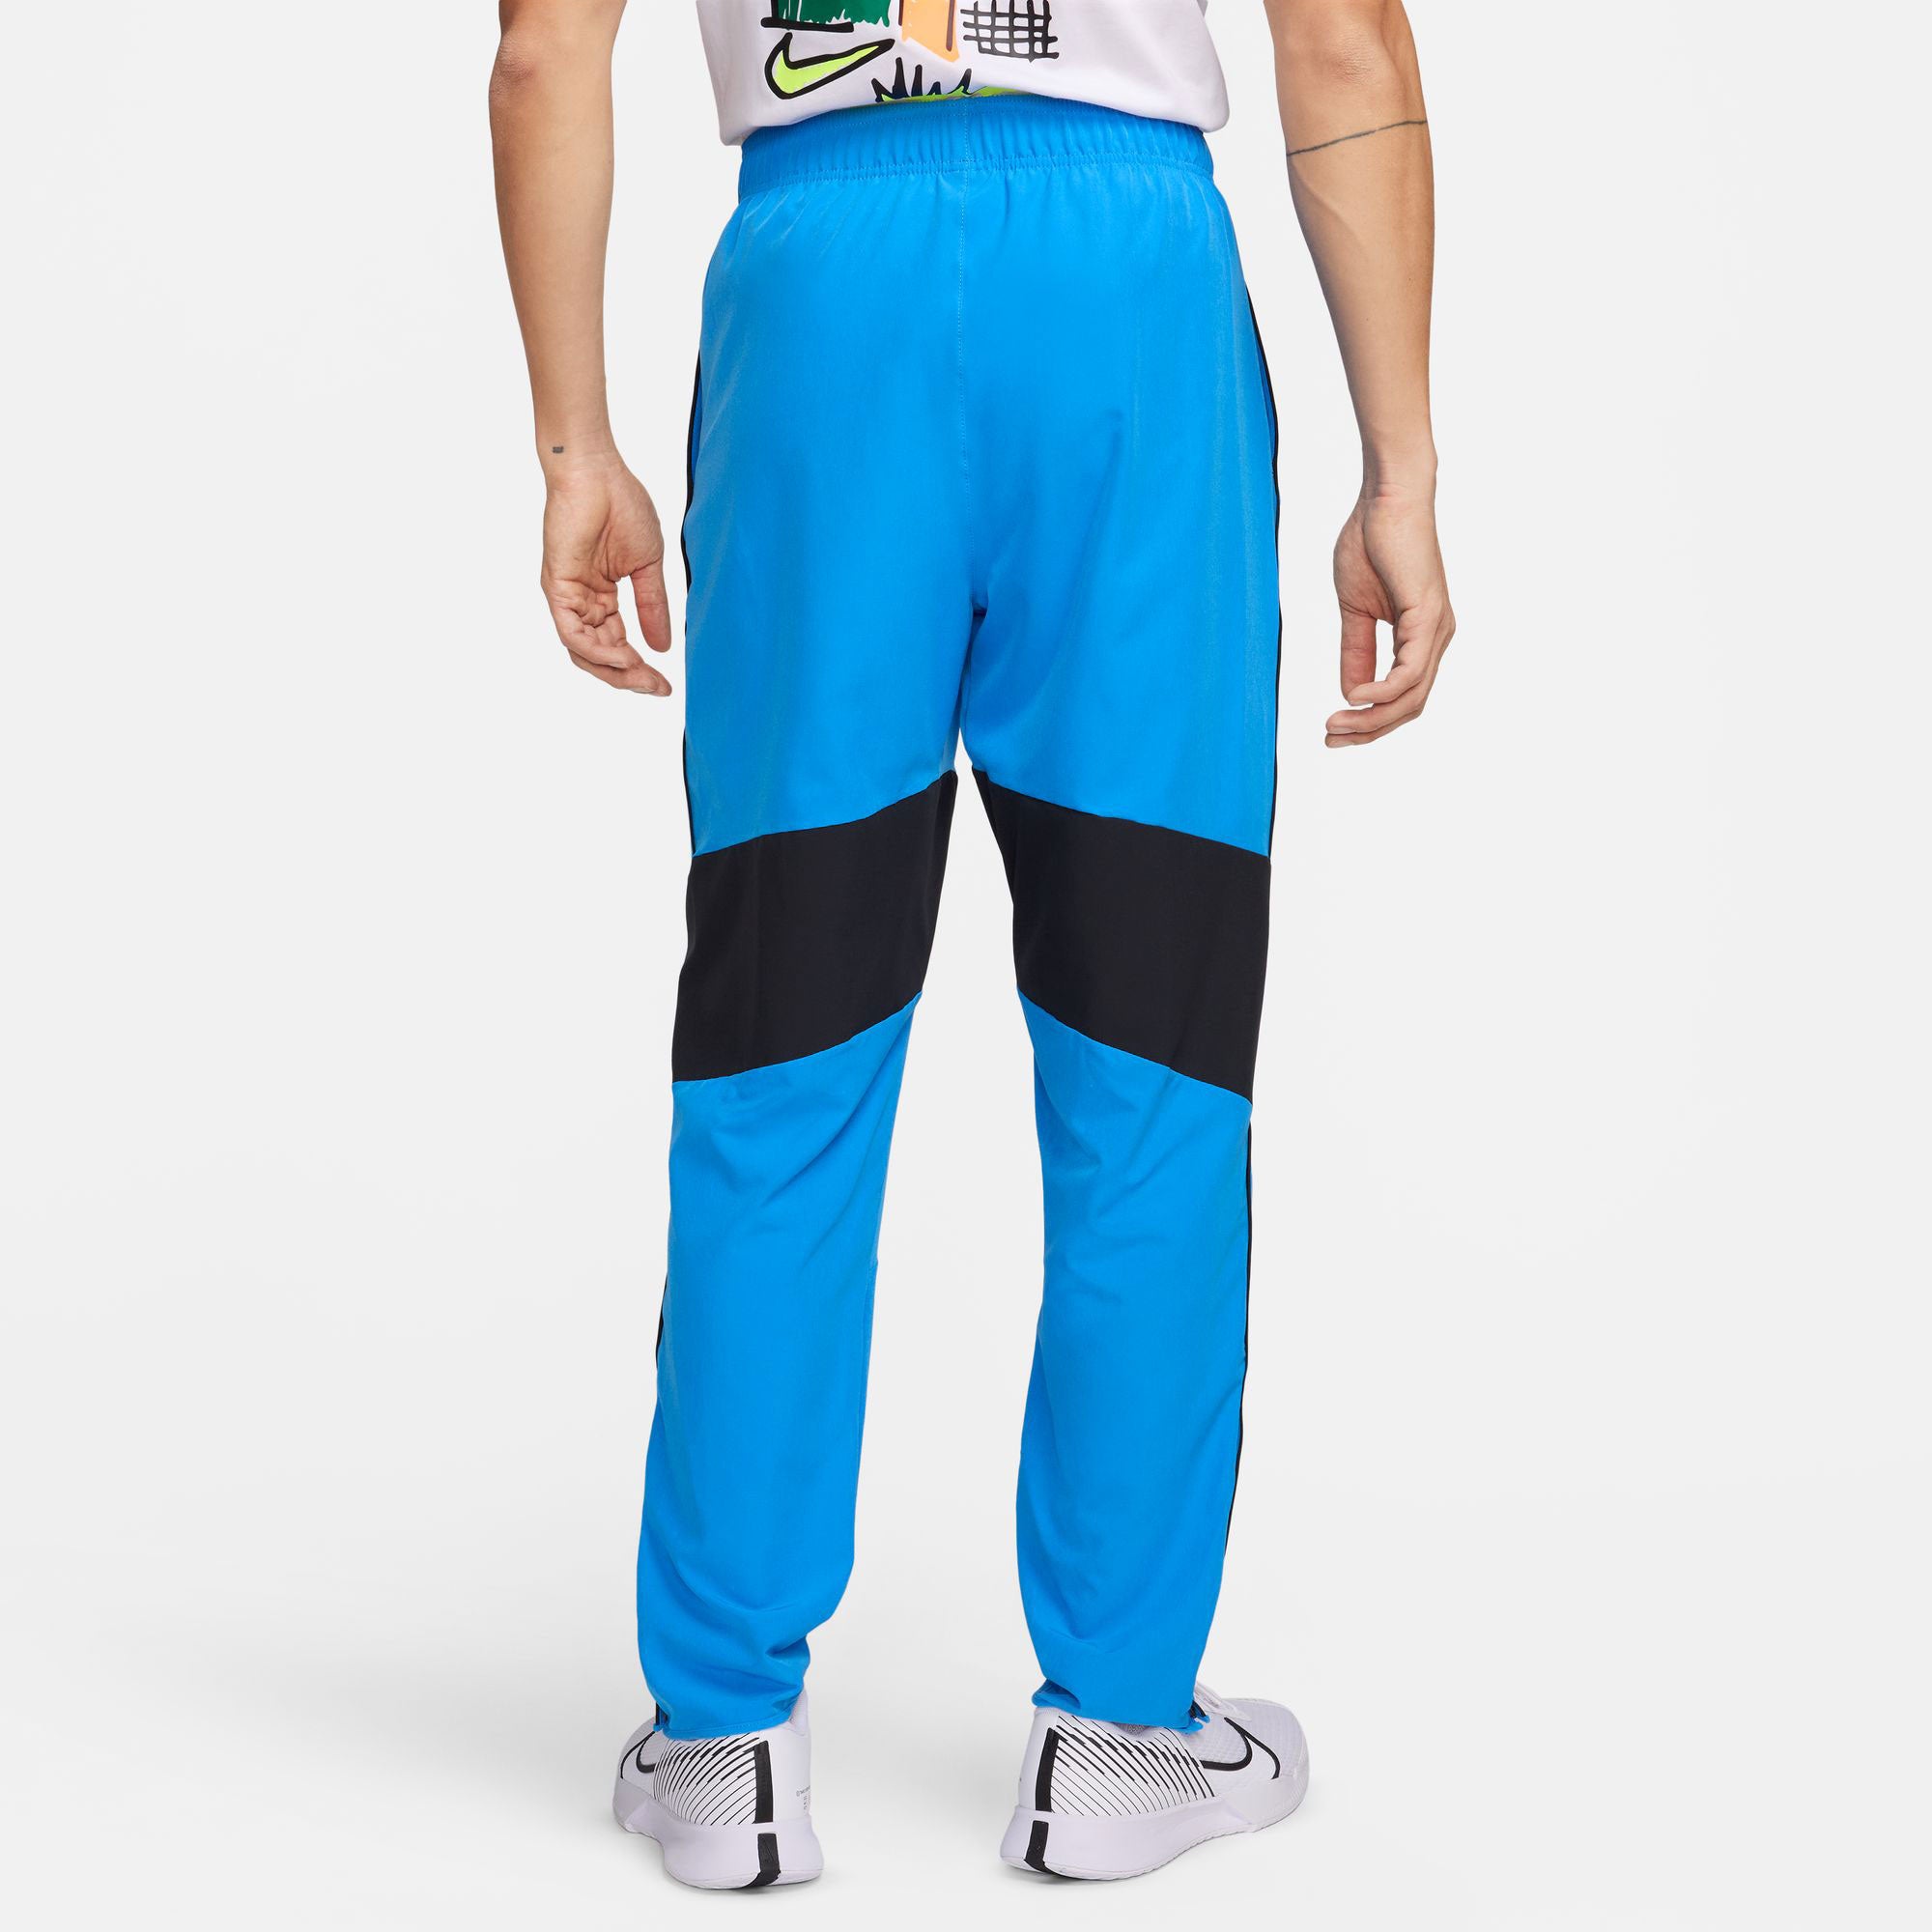 NikeCourt Advantage Men's Dri-FIT Tennis Pants - Blue (2)